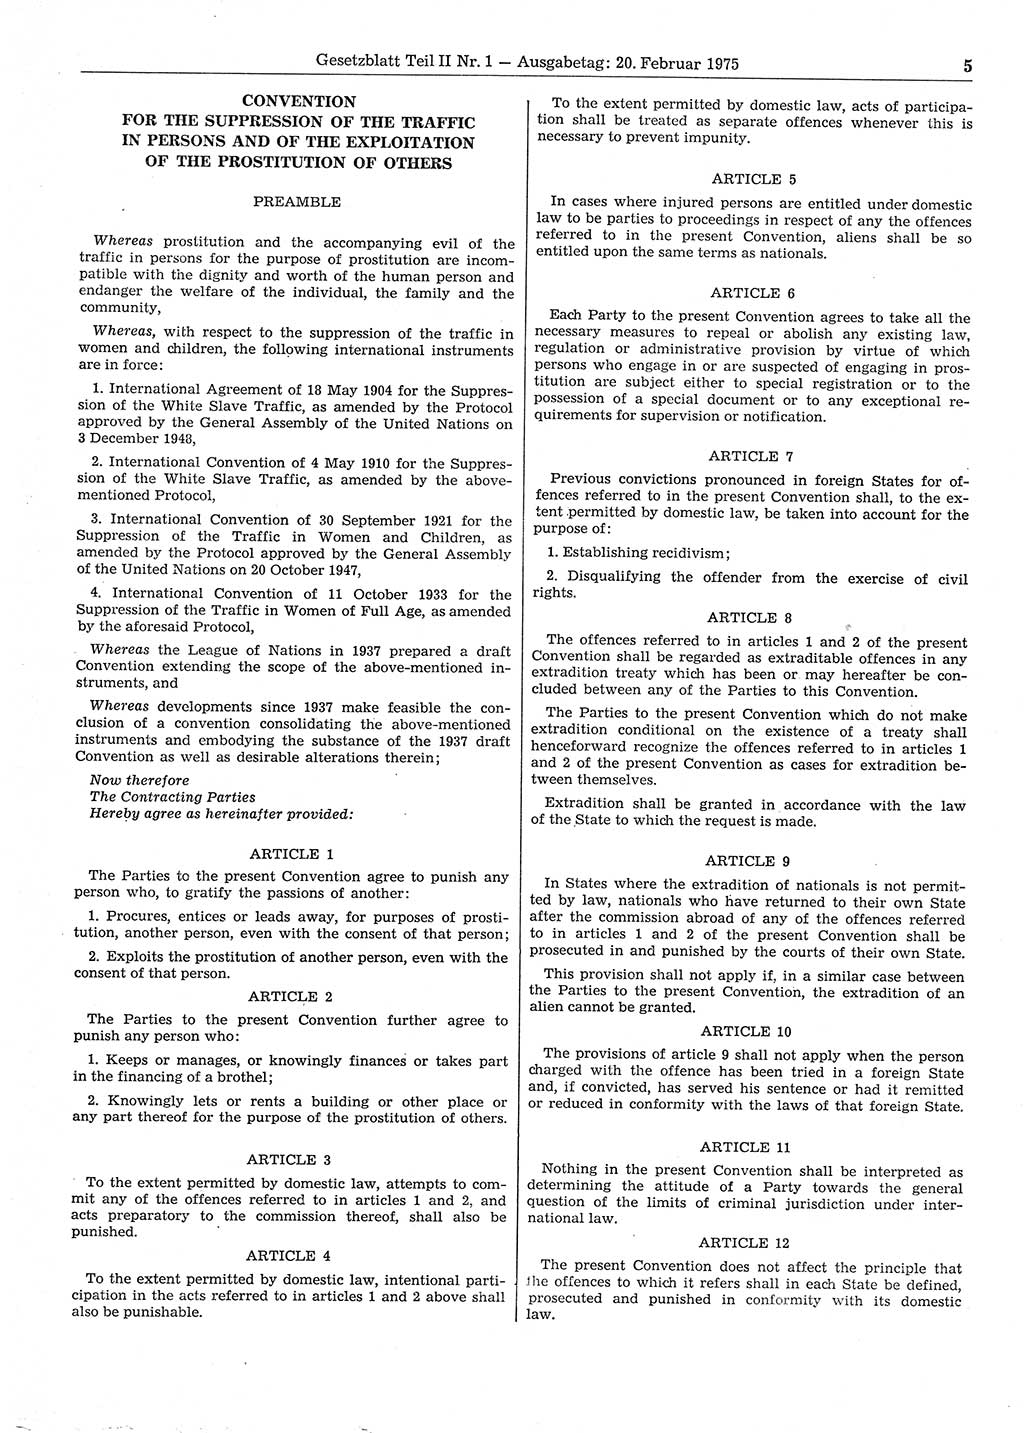 Gesetzblatt (GBl.) der Deutschen Demokratischen Republik (DDR) Teil ⅠⅠ 1975, Seite 5 (GBl. DDR ⅠⅠ 1975, S. 5)